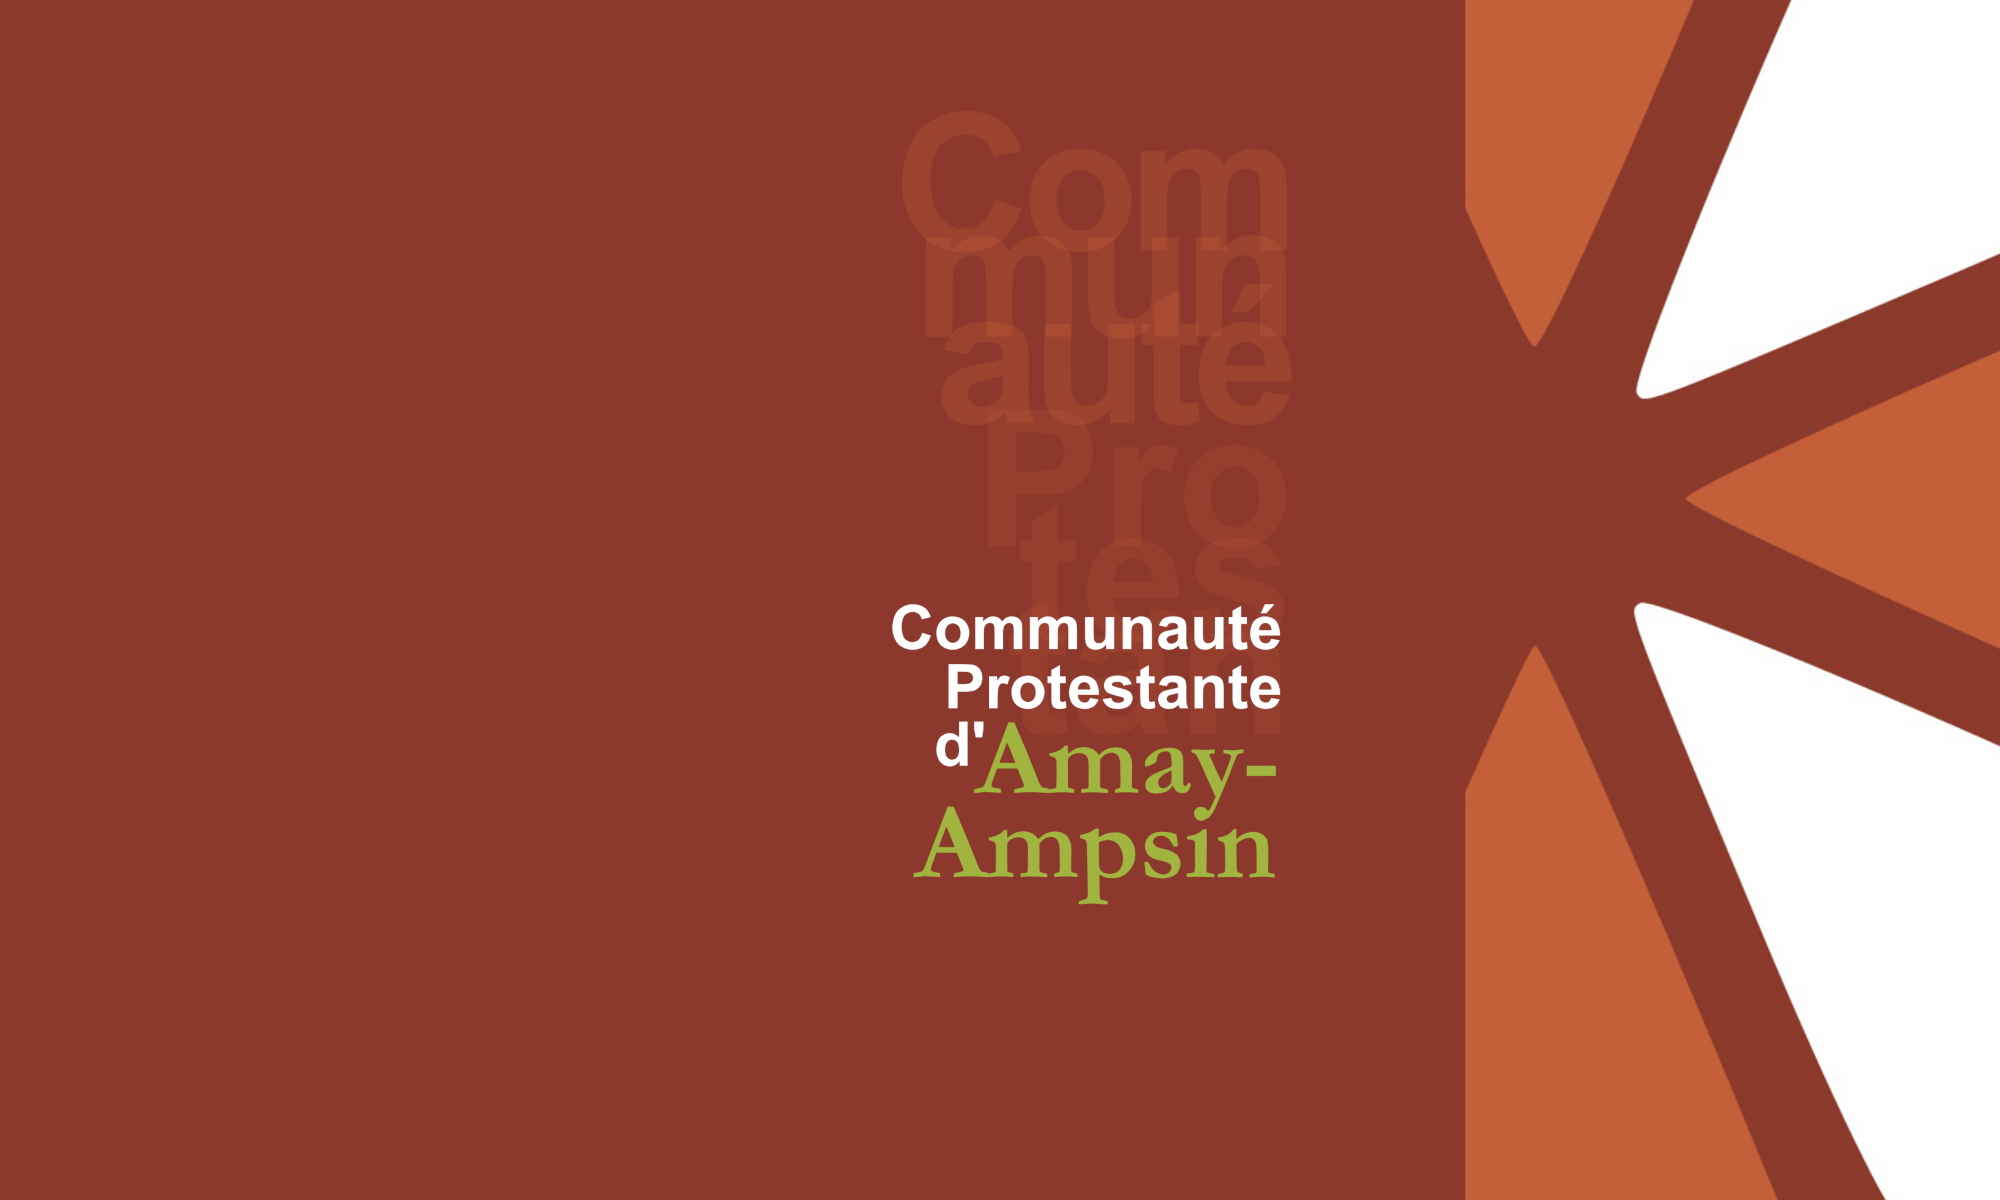 Communauté Protestante d'Amay-Ampsin